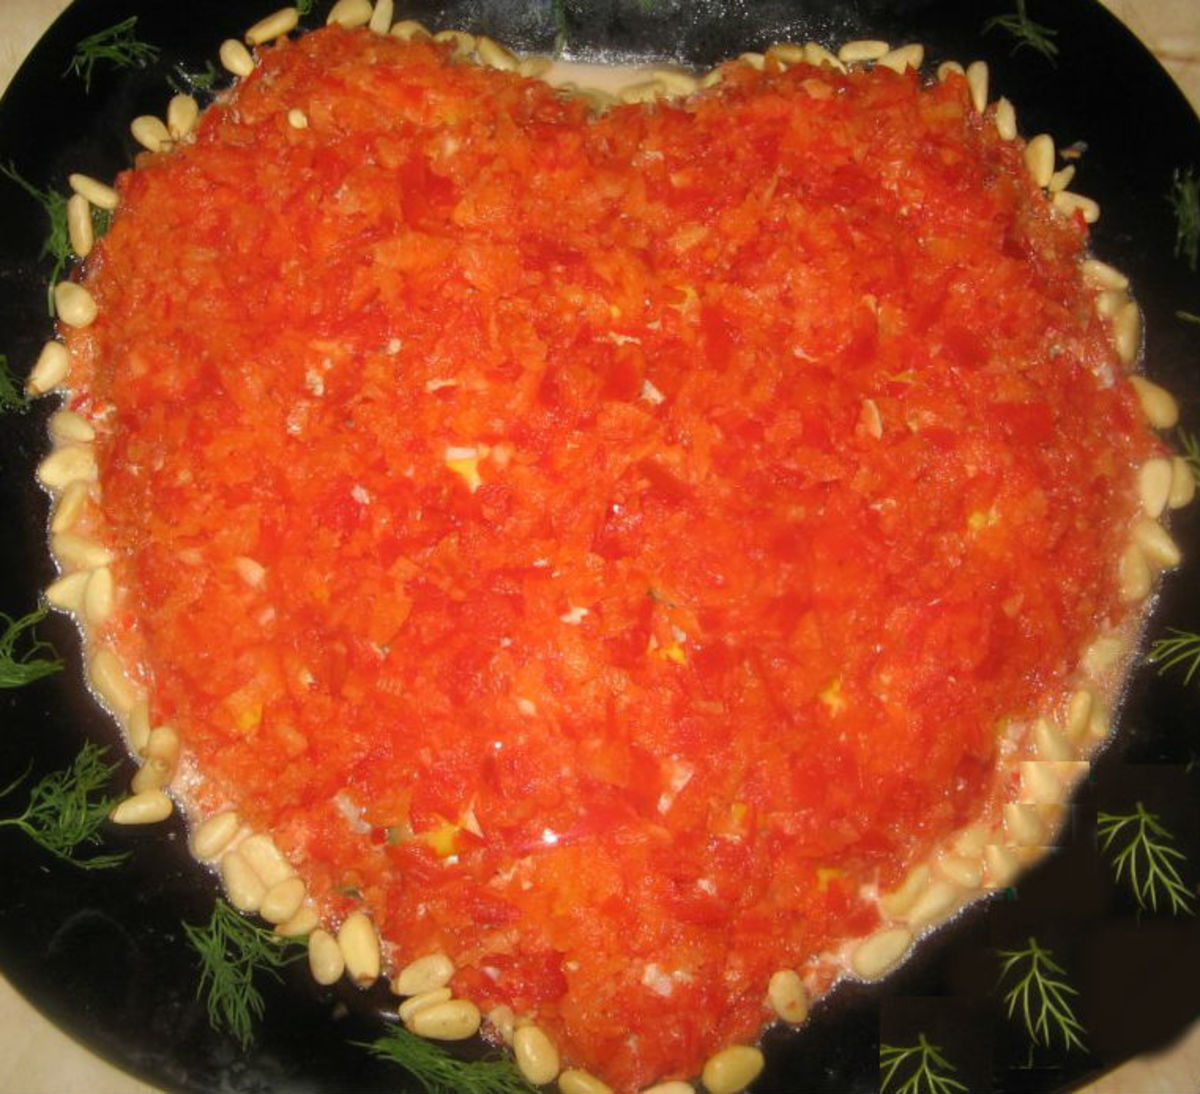 Salad "heart"